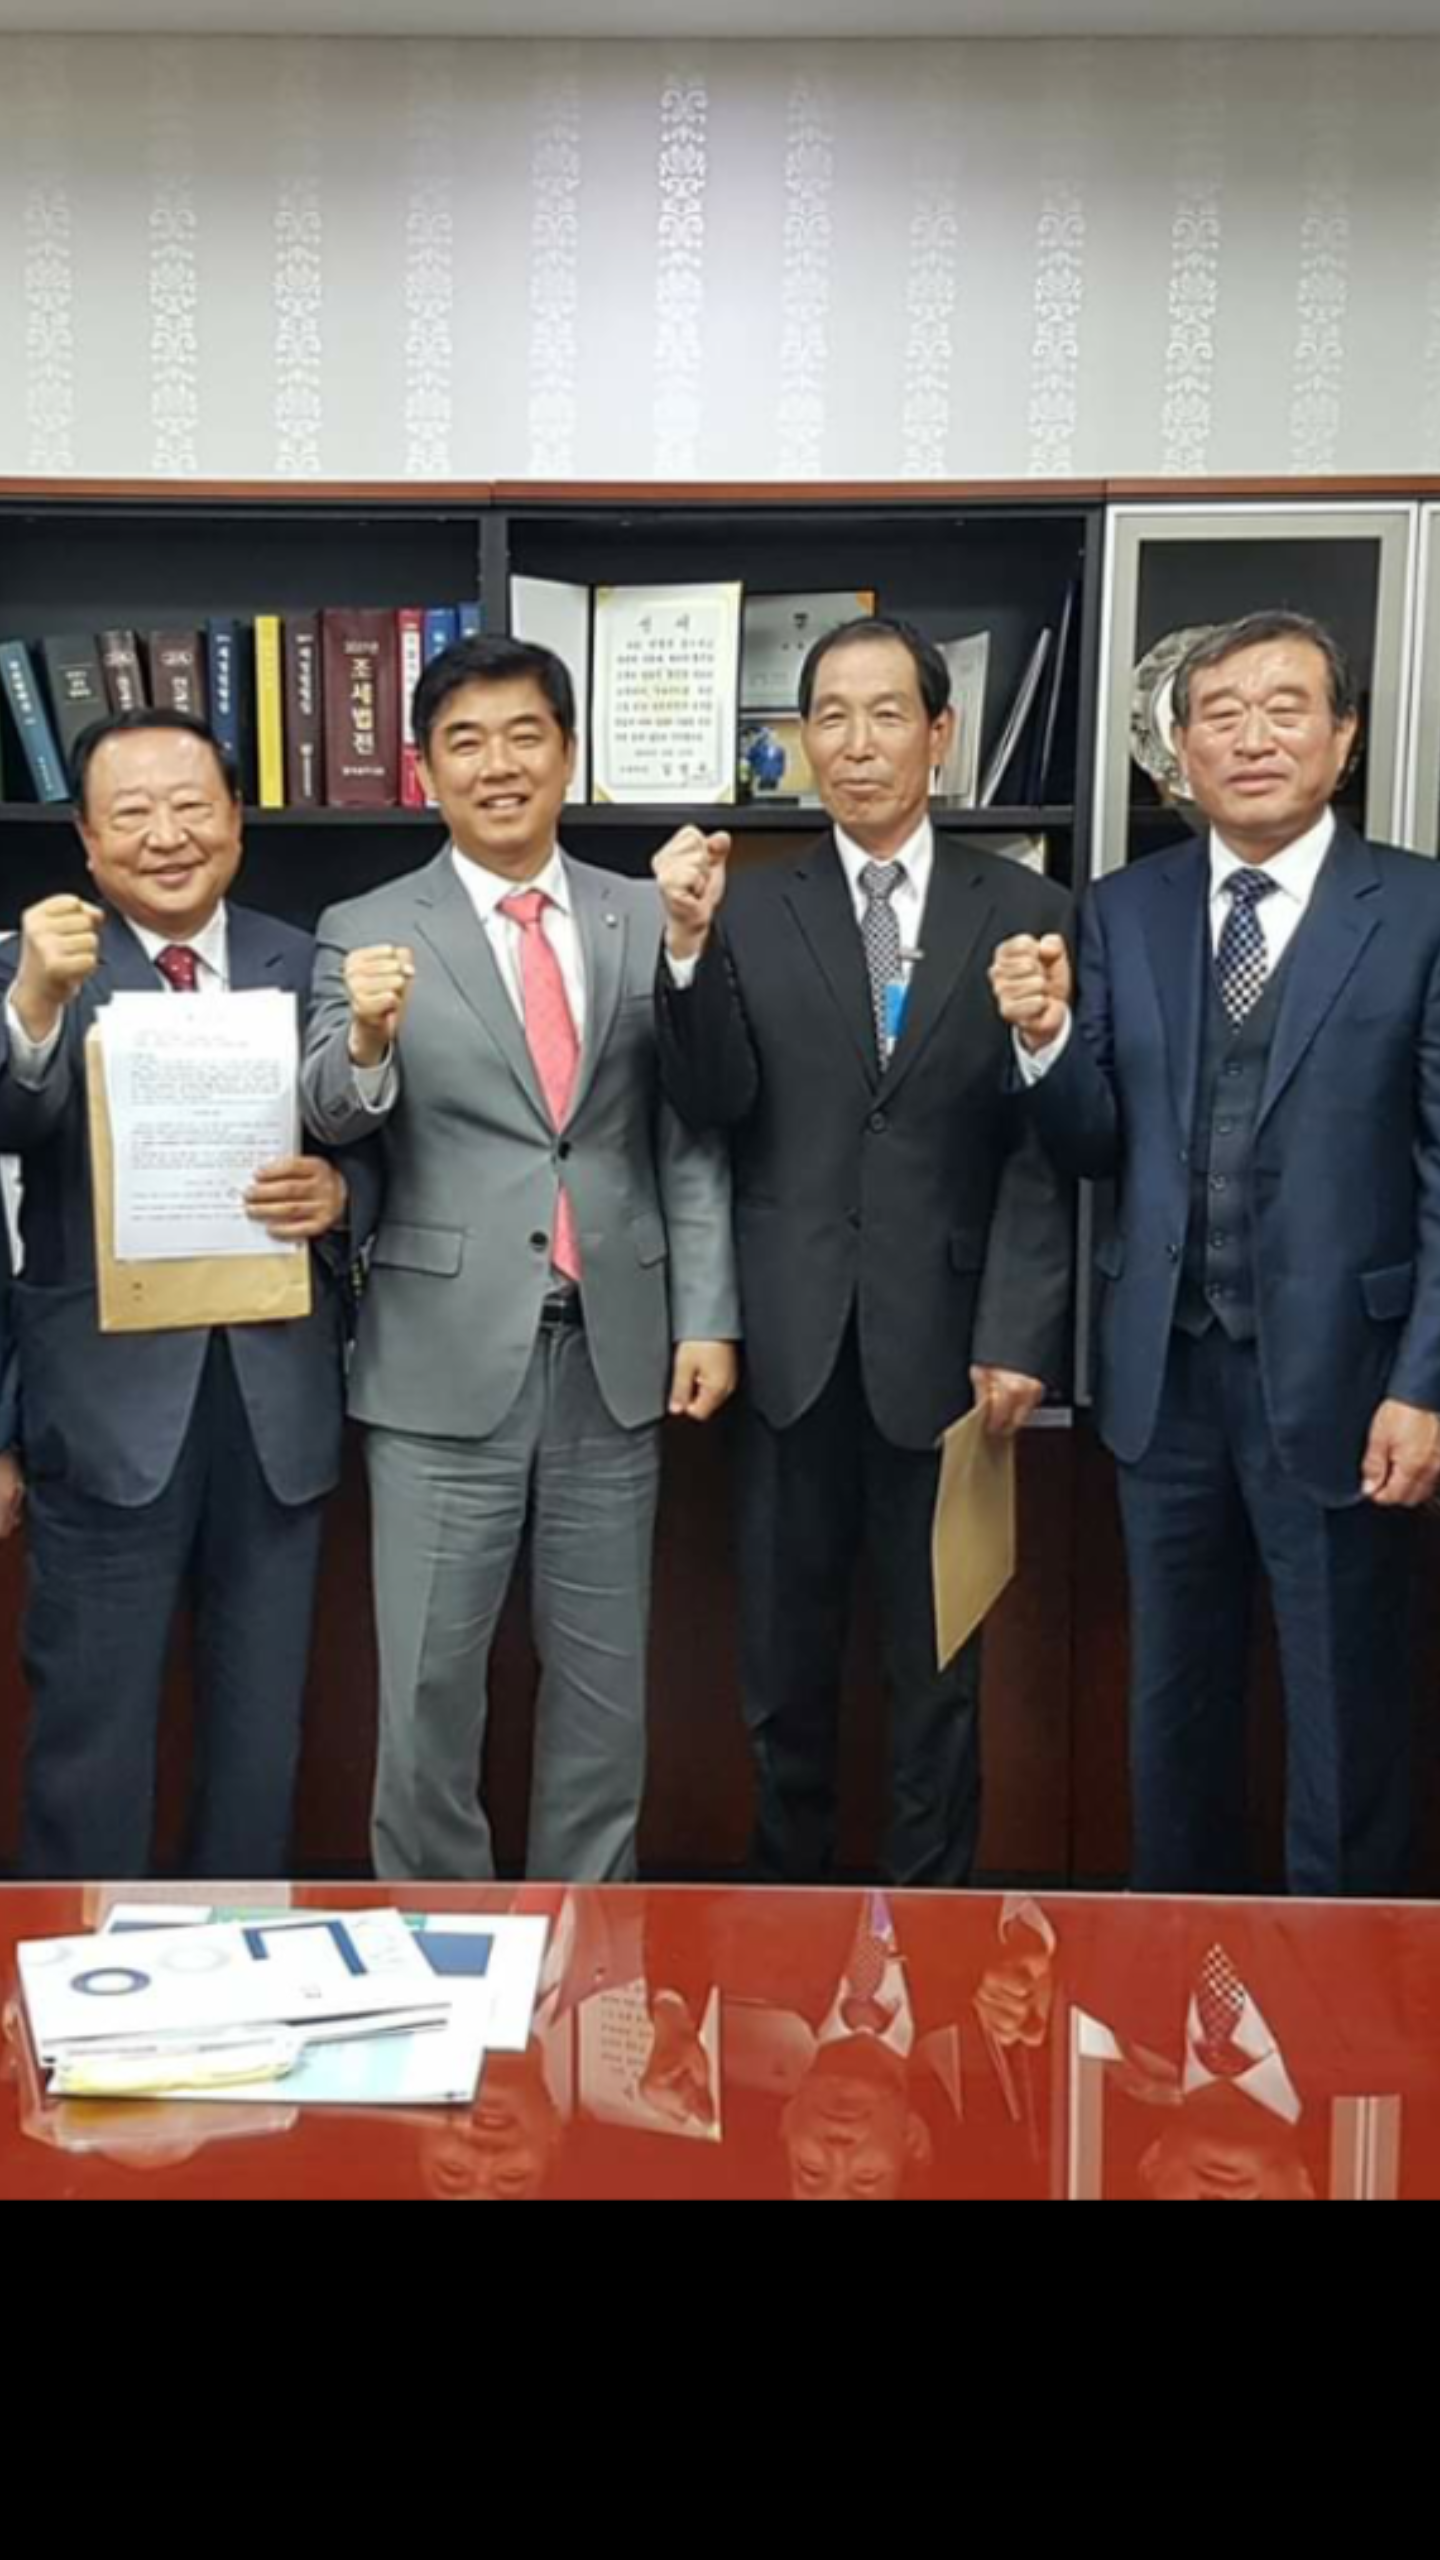 15년만의 합의서 서명 날인 하다(김병욱 의원님 사진) 2